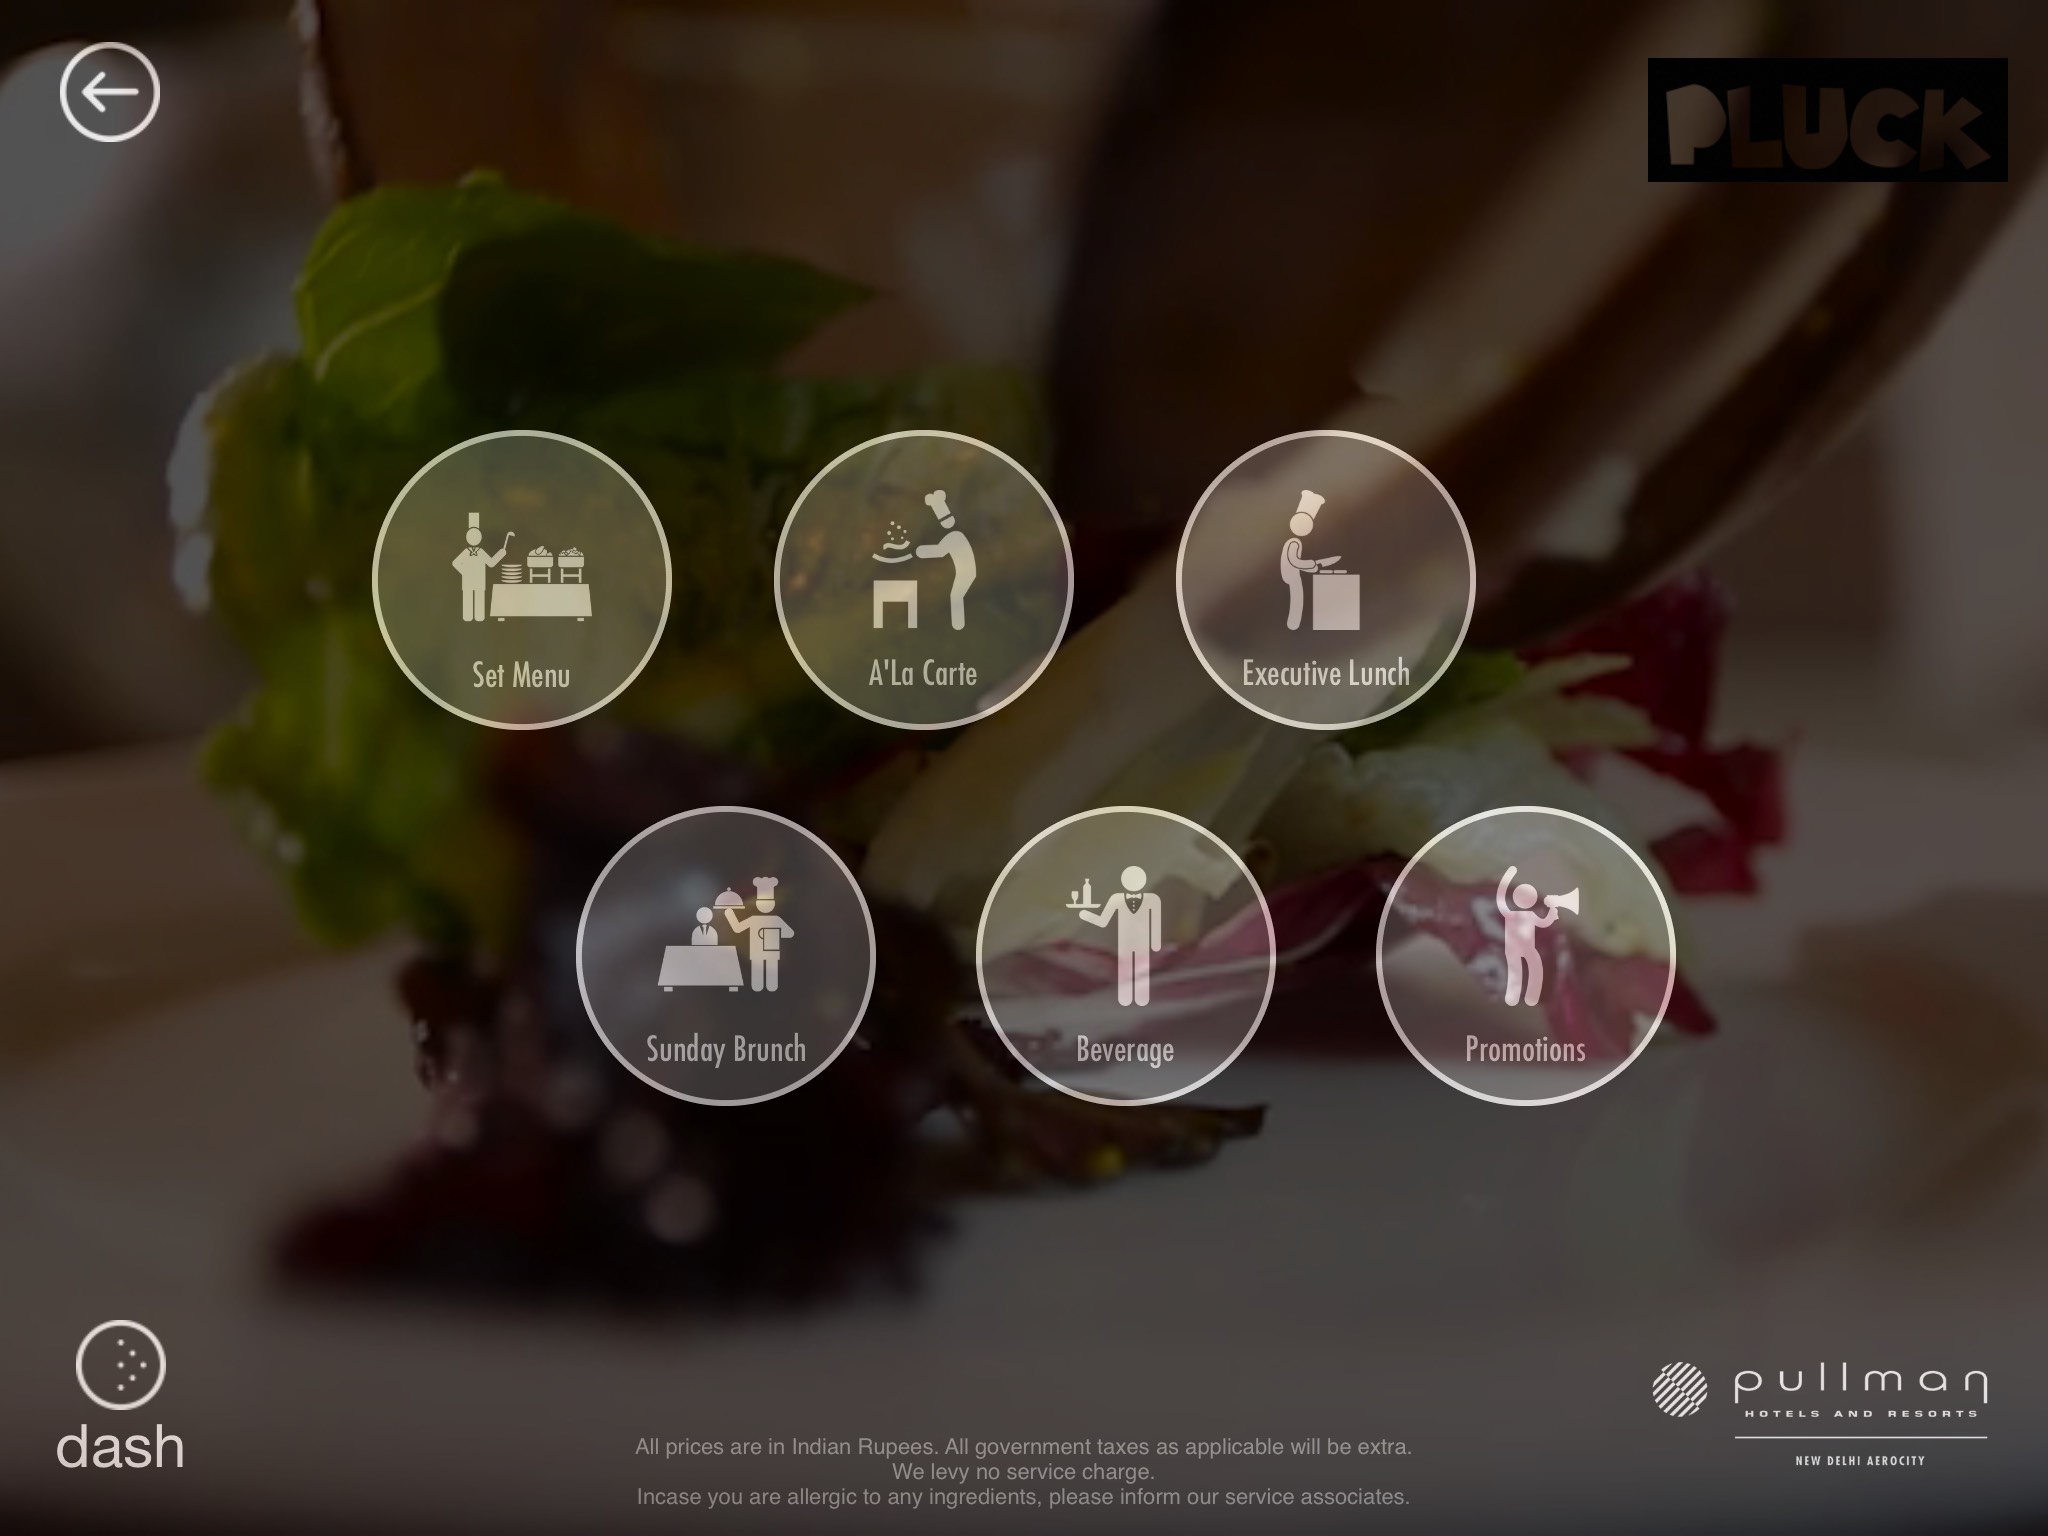 IdeaChakki Dash Menu iPad App for restaurants like Taj Pullman and ITC